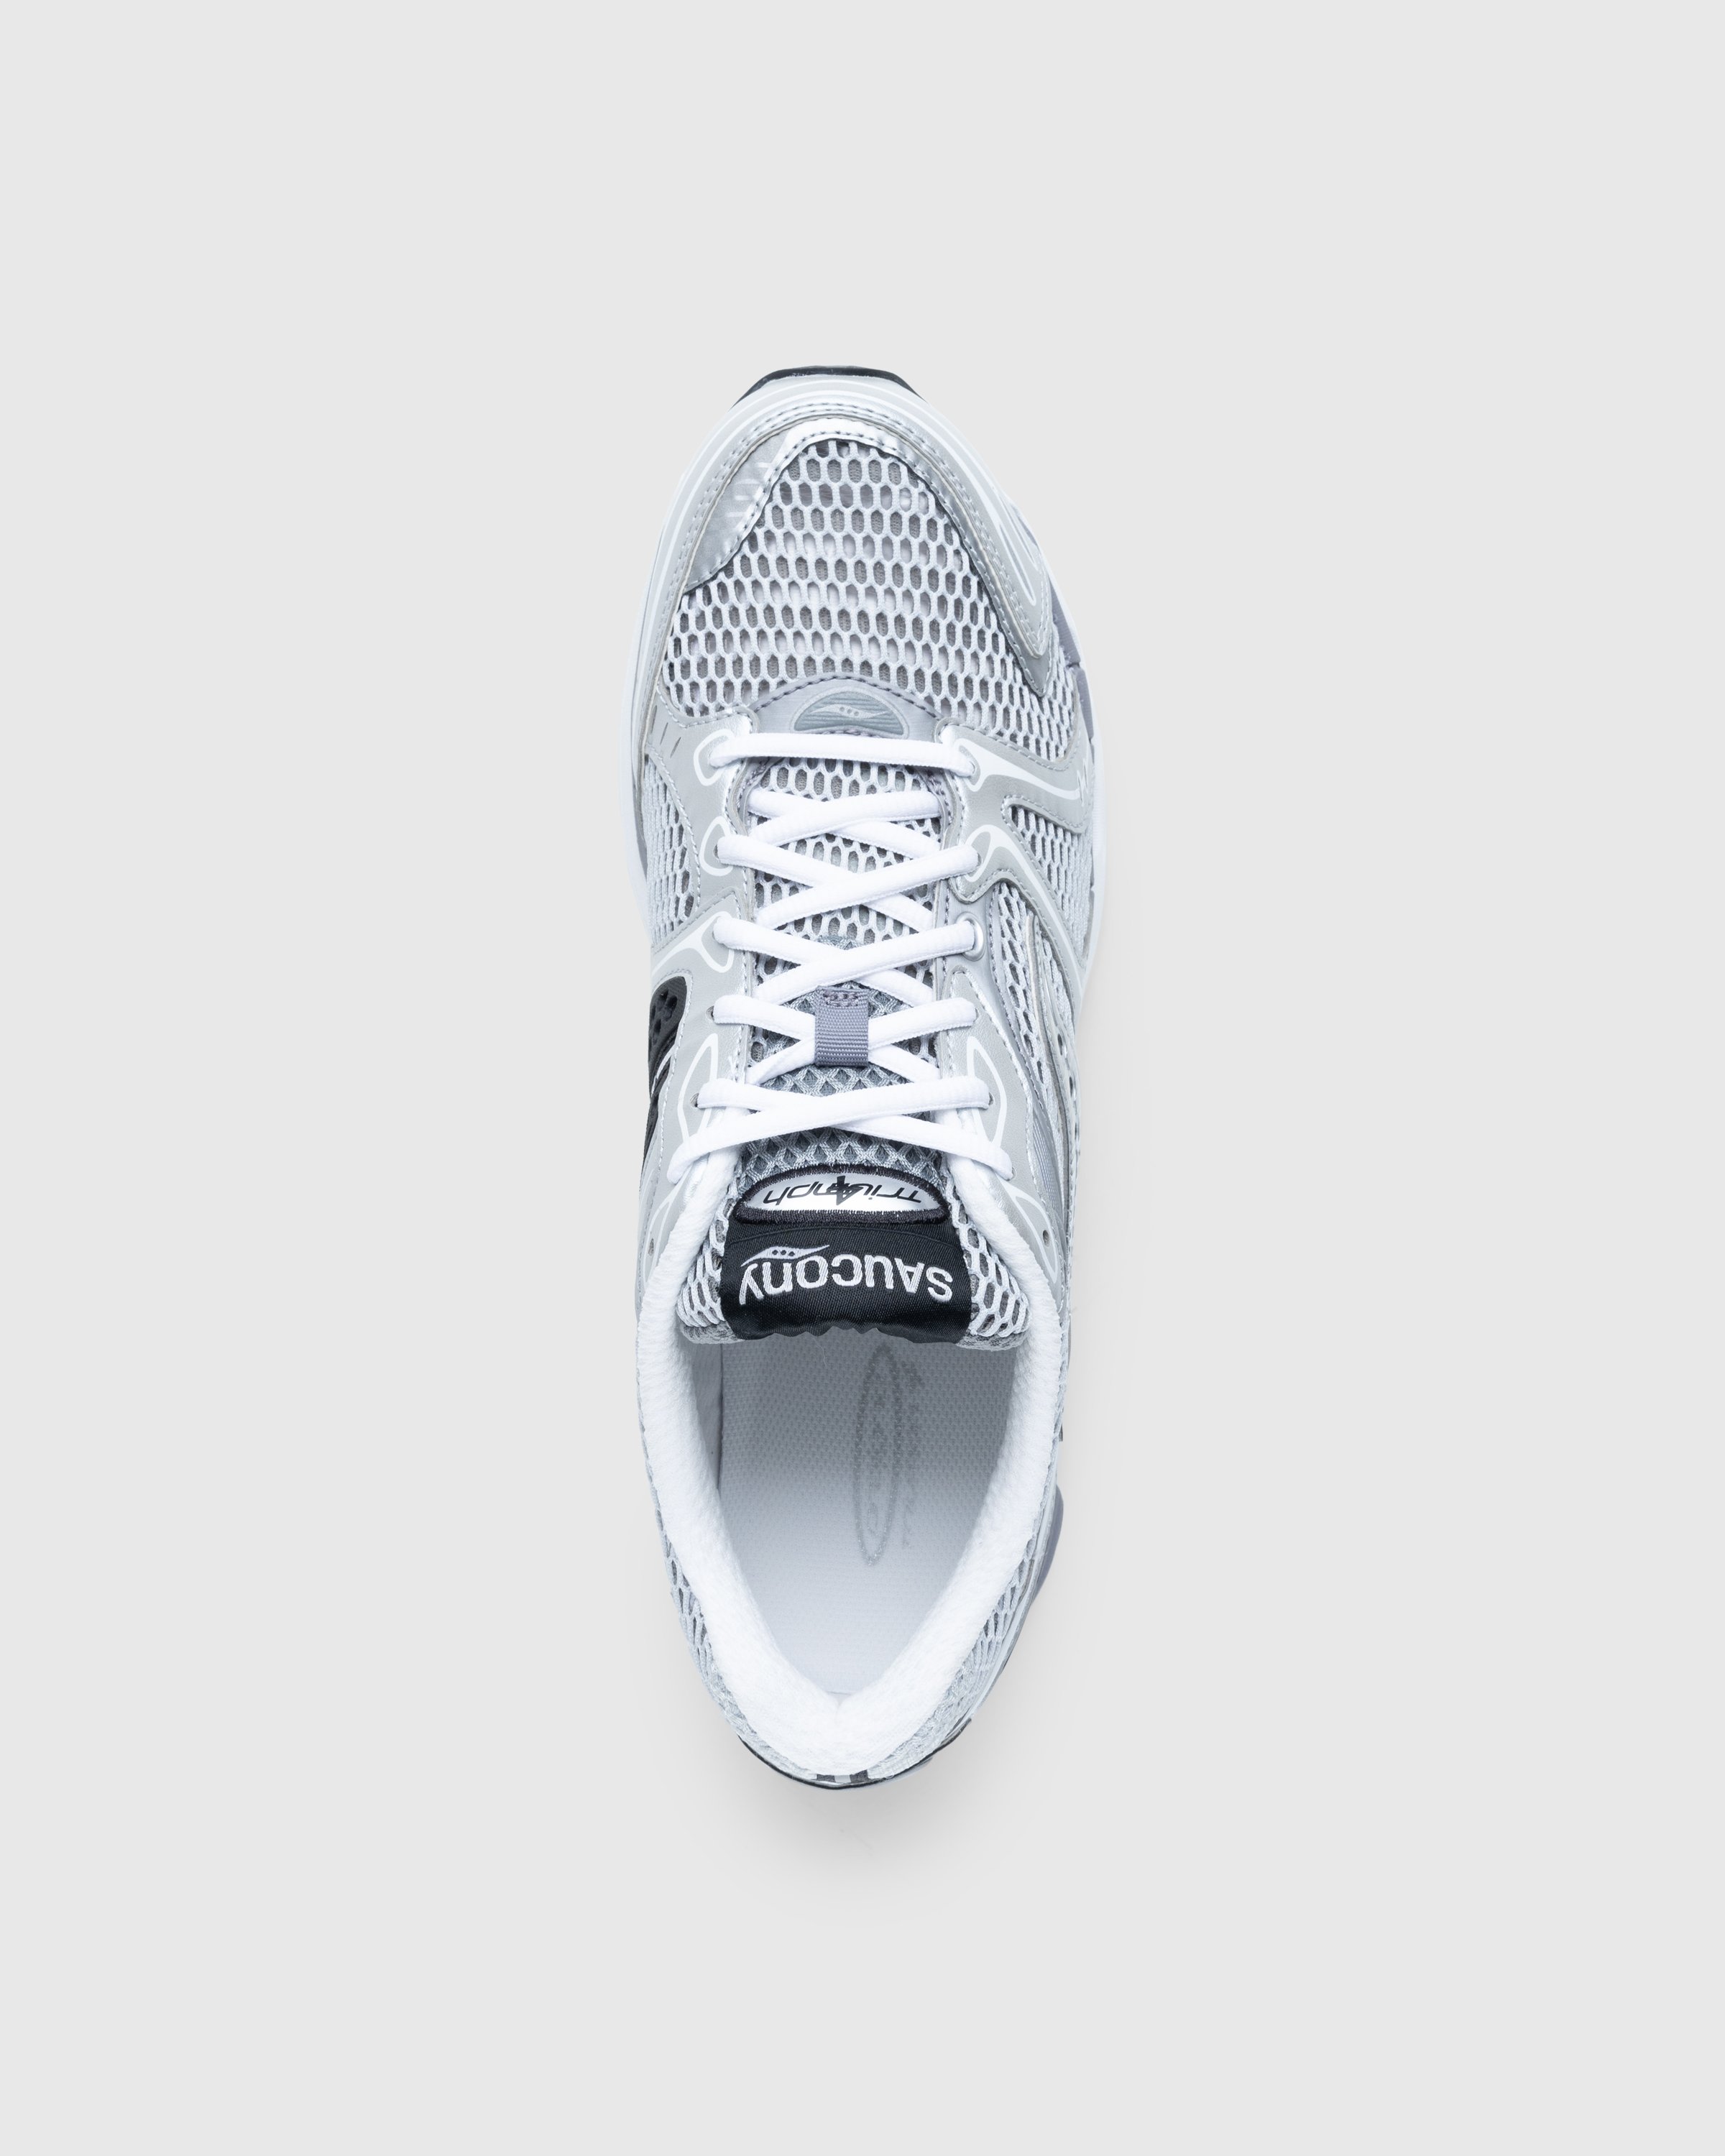 Saucony - ProGrid Triumph 4 Gray/Silver - Footwear - Grey - Image 5